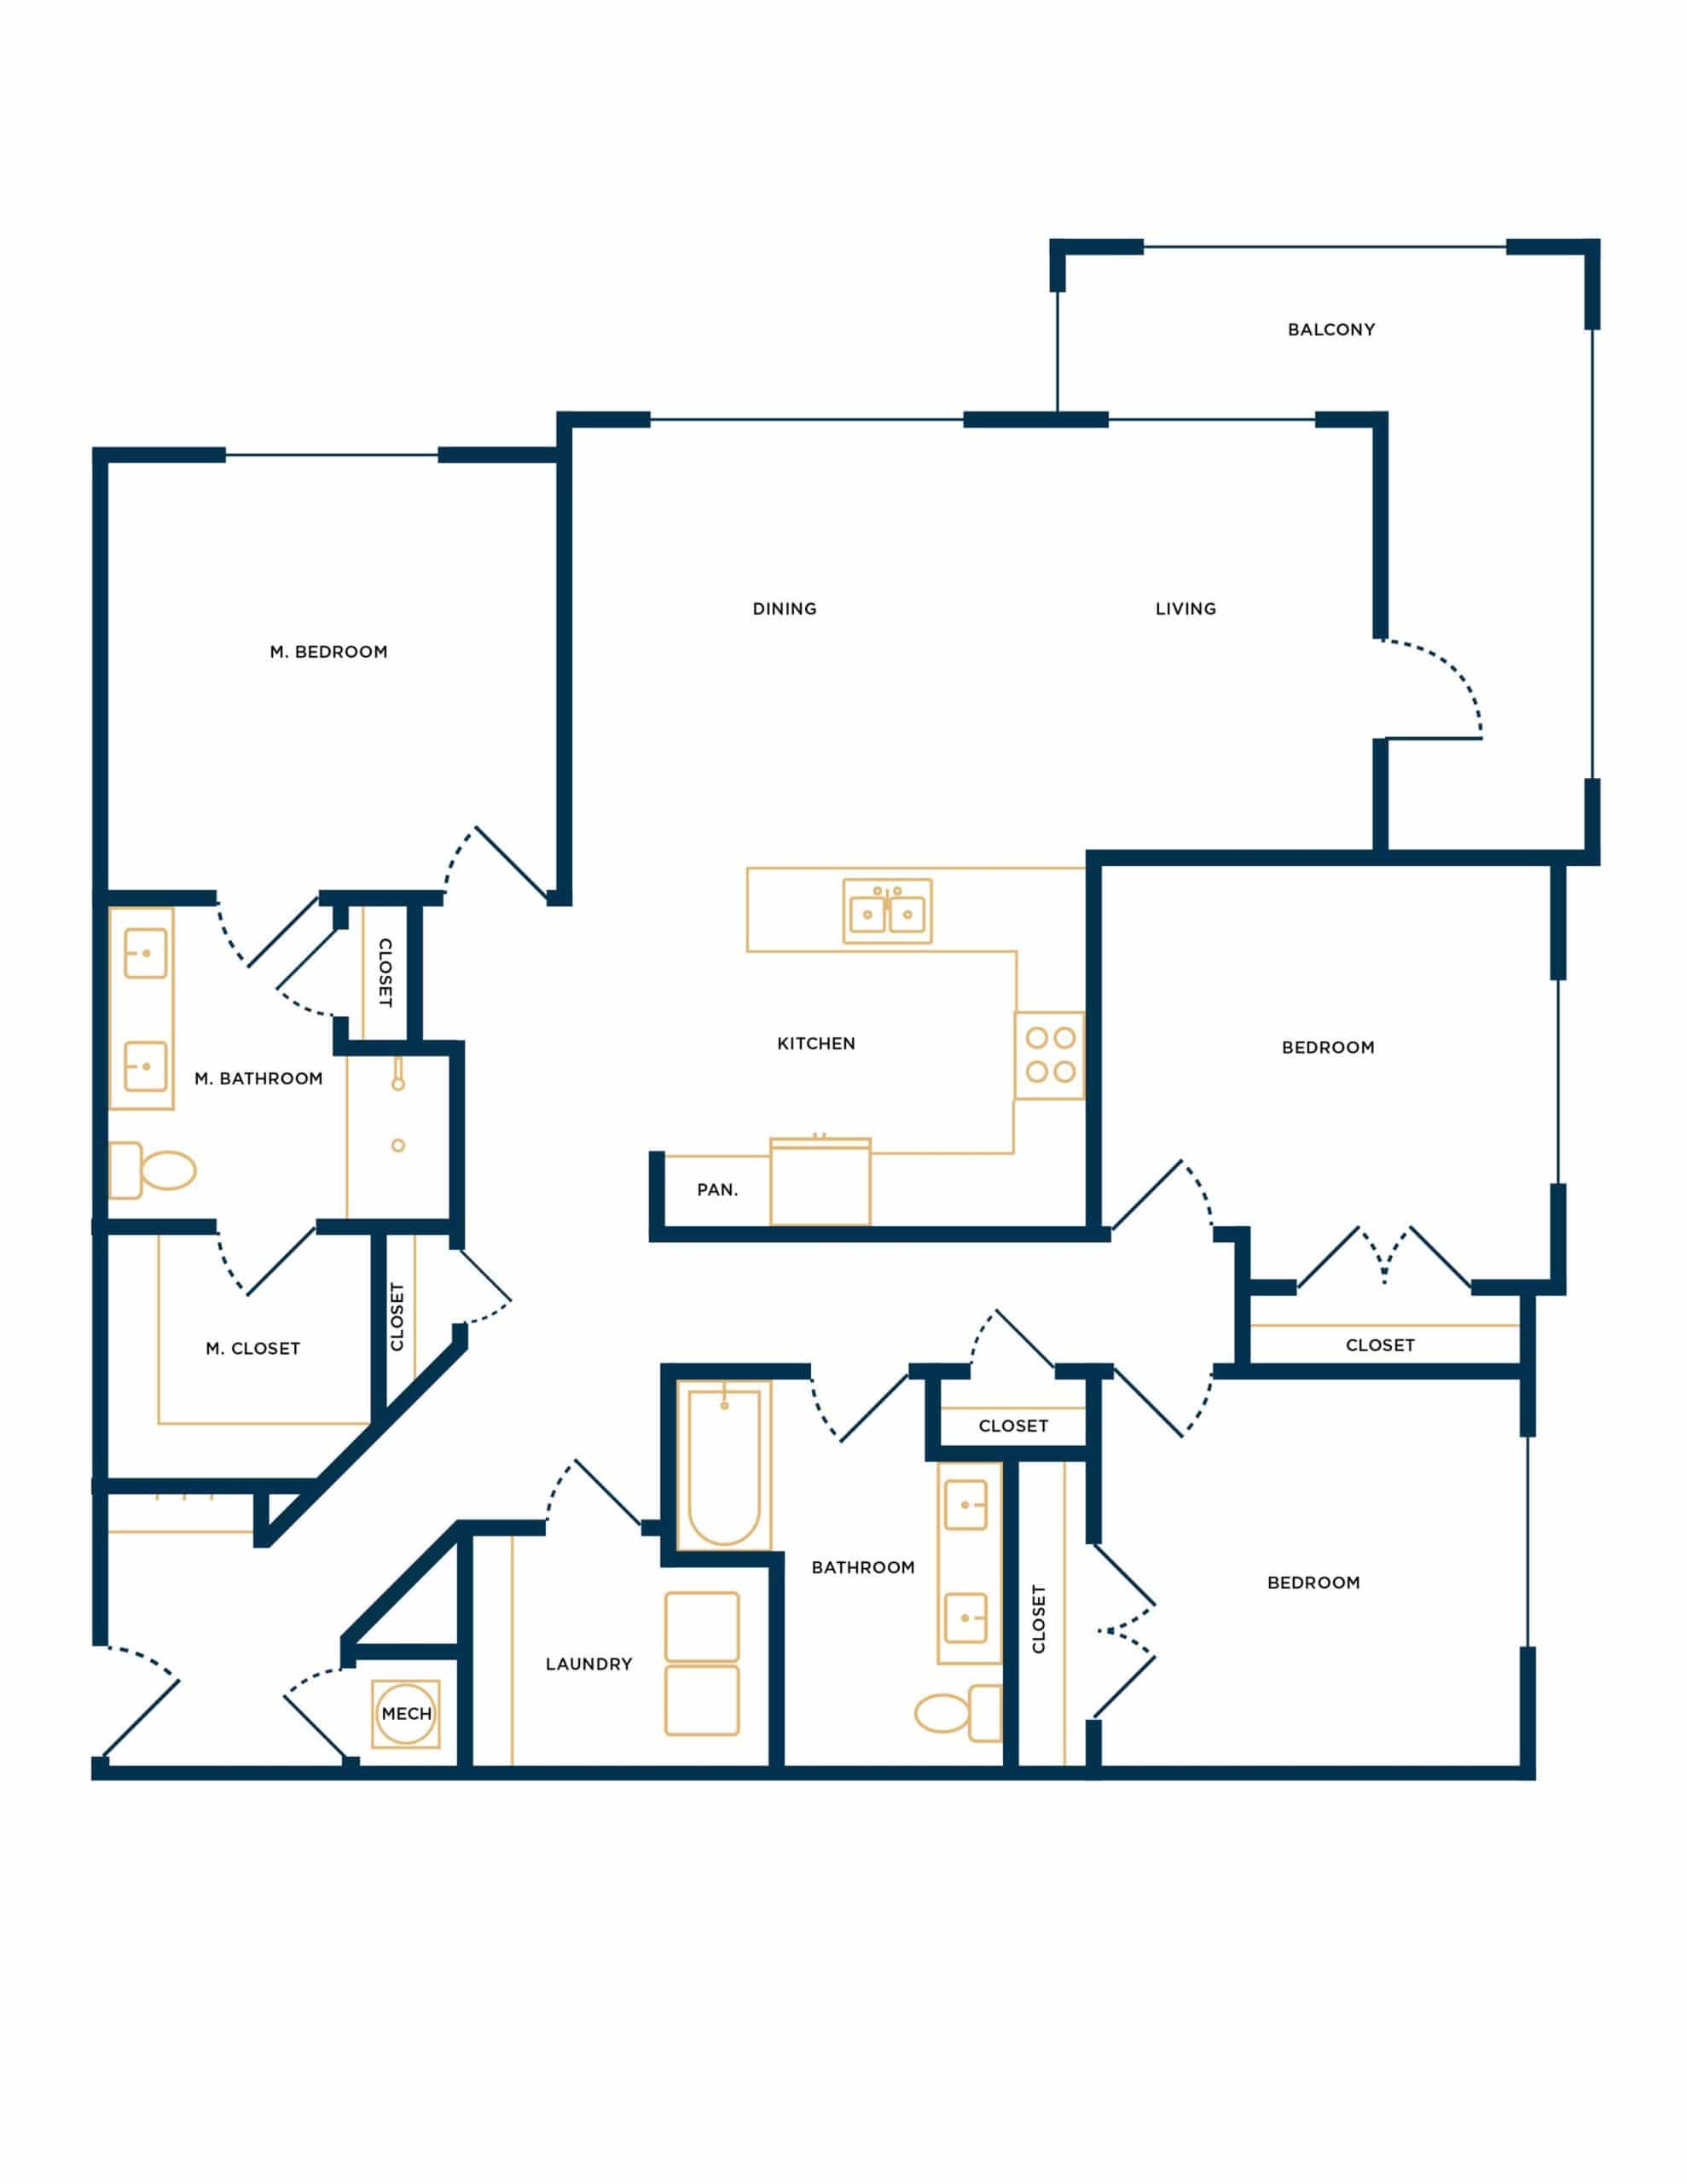 Home Floor Plan Image